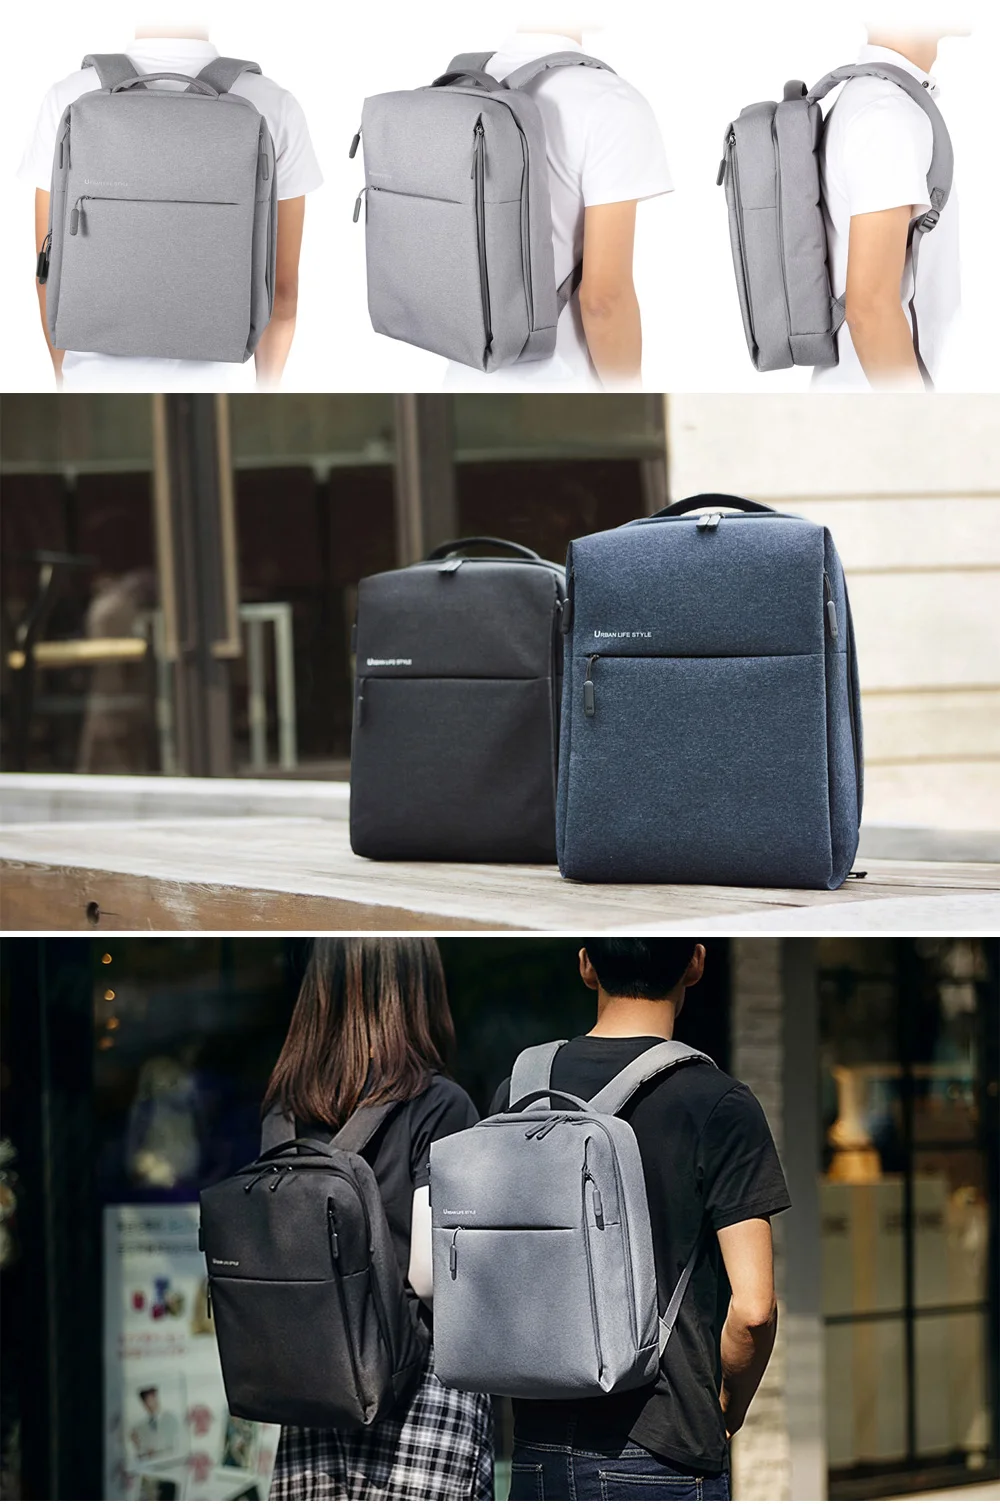 Xiaomi 14 дюймов 20L городской стиль полиэстер рюкзак для отдыха спортивная сумка Водонепроницаемый Путешествия Спорт Туризм Повседневный стиль